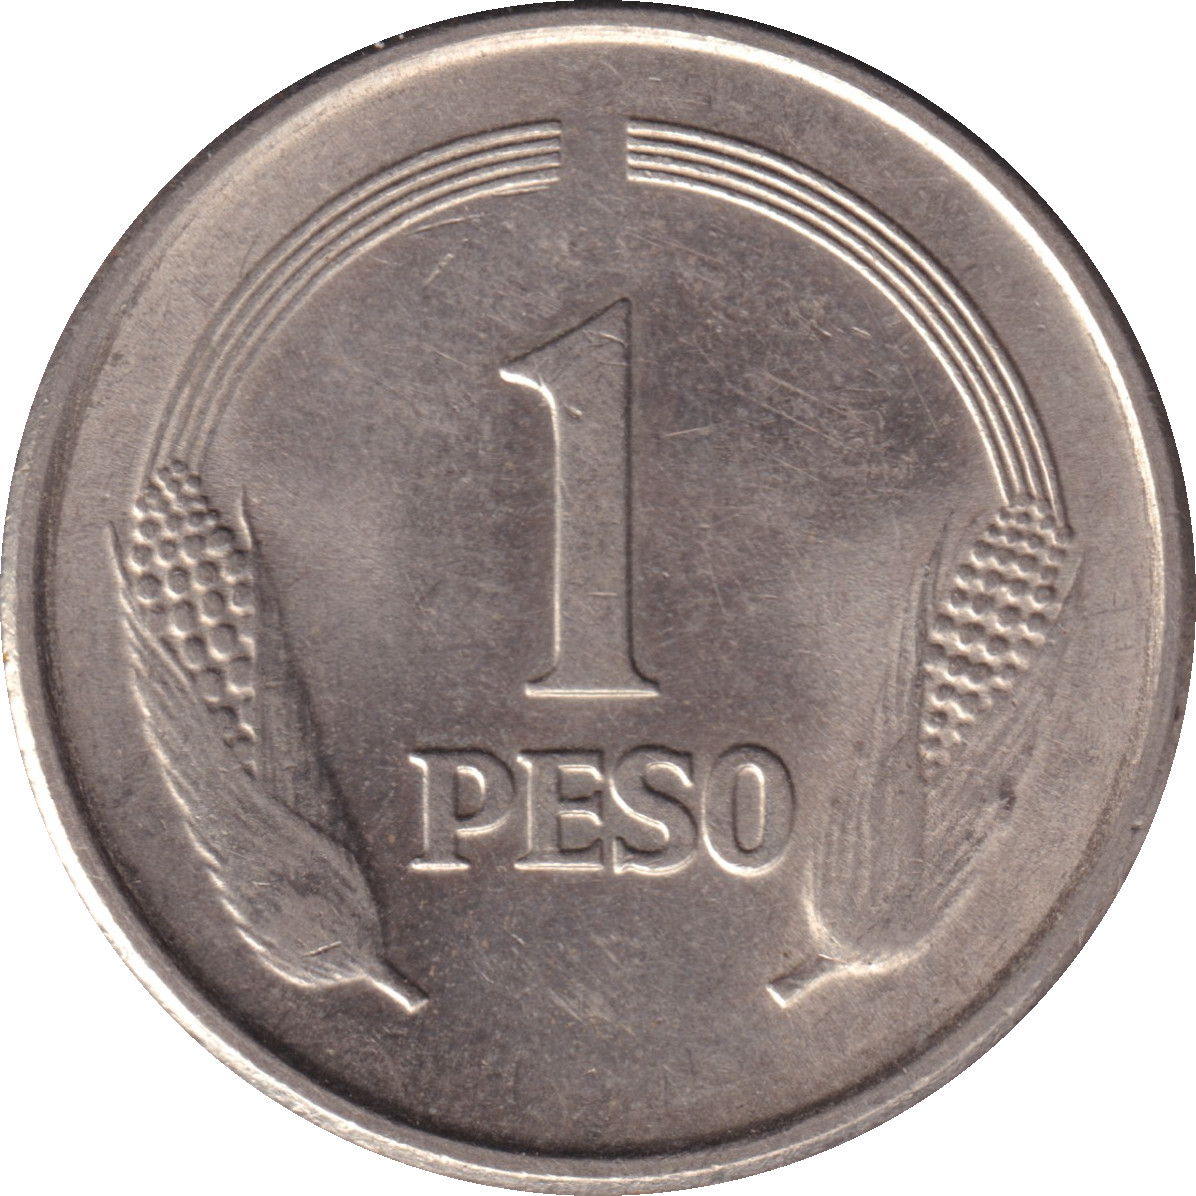 1 peso - Simon Bolivar facing